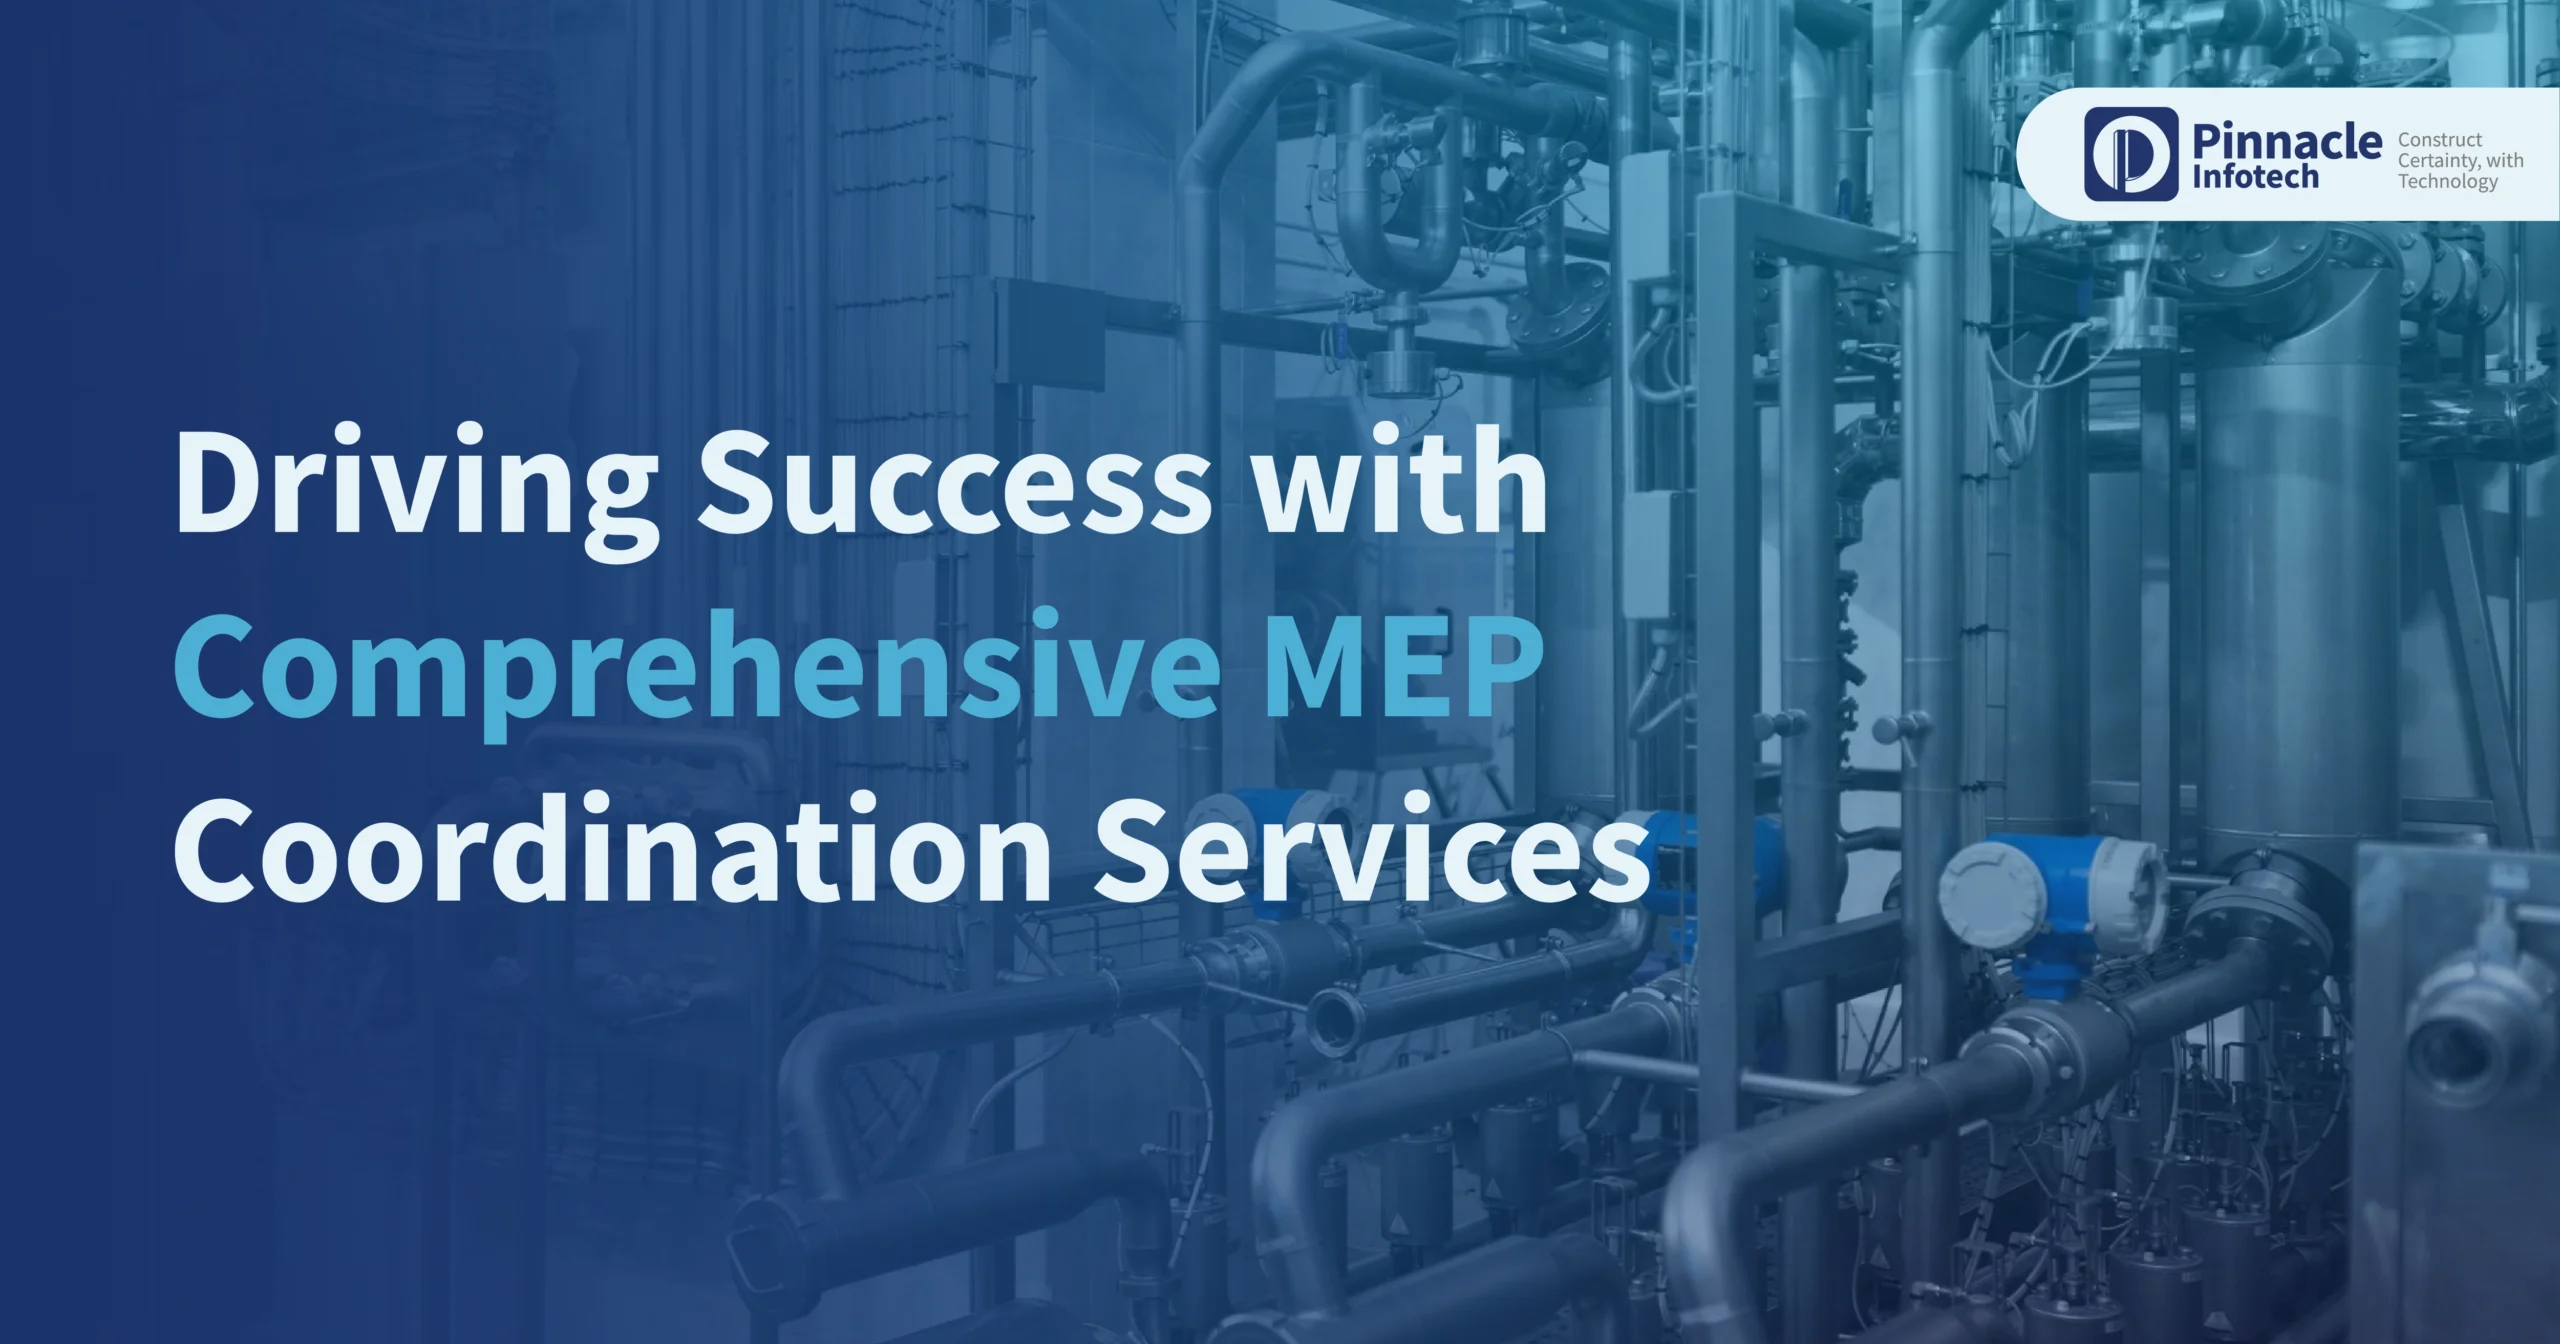 MEP Coordination Services - Pinnacle Infotech